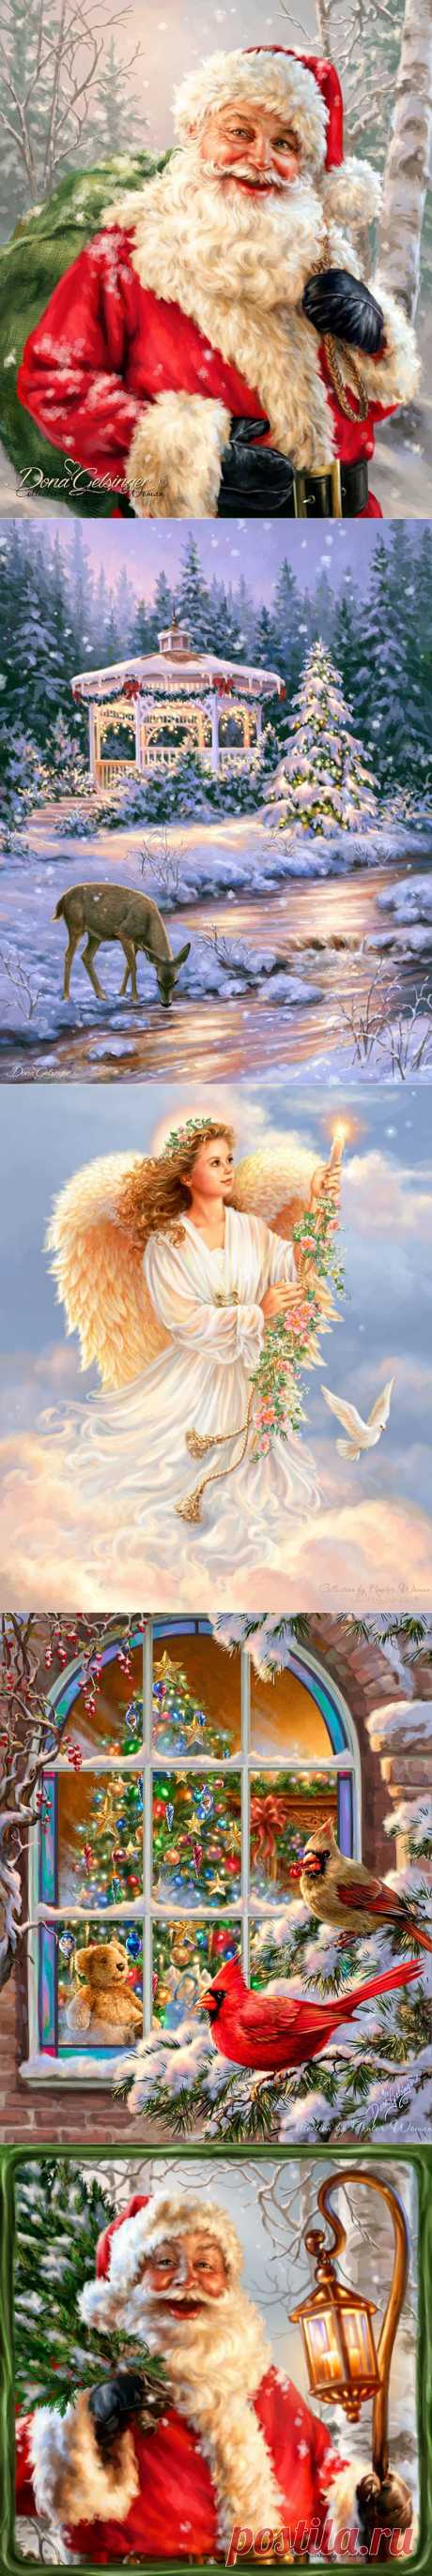 Снежный ангел творил в небесах Чудеса...| Dona Gelsinger (новинки в коллекцию)